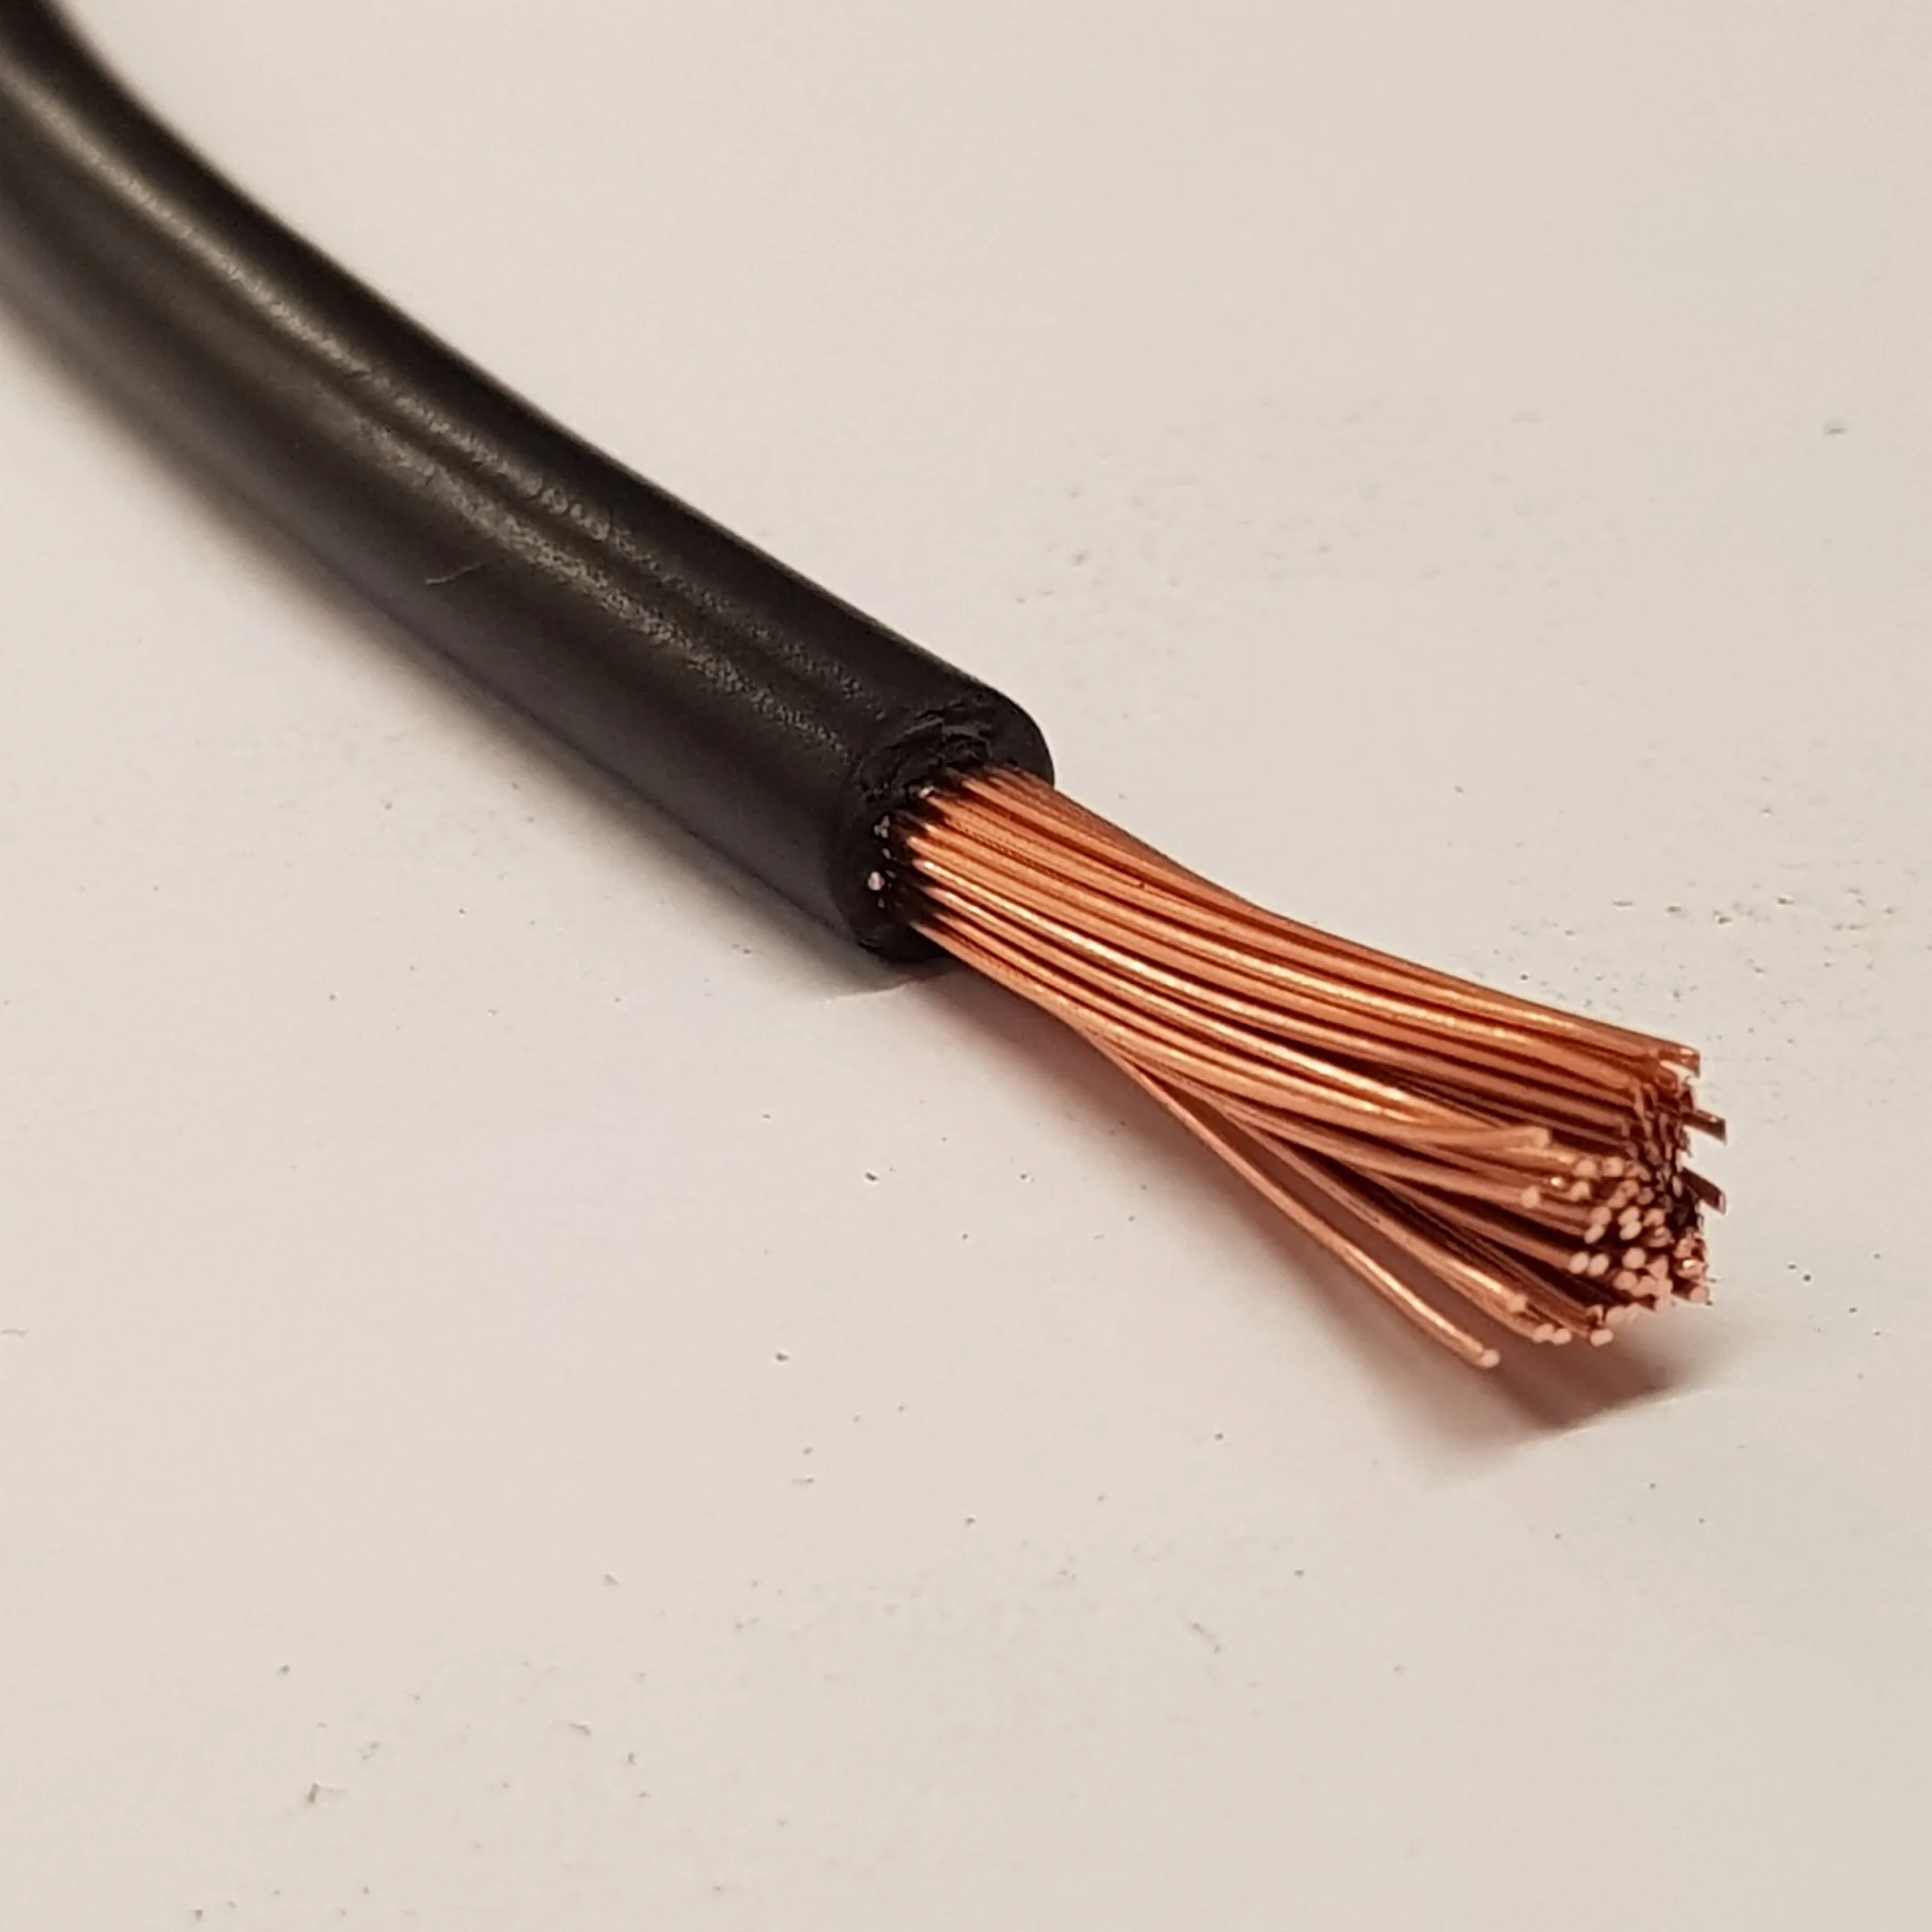 3 1 5 мм провод. Провод/wire h07v-k 1g6 мм2. 1.5 Mm2 провод. Кабель 10 мм2 гибкий одножильный. Медный гибкий кабель 5x35.